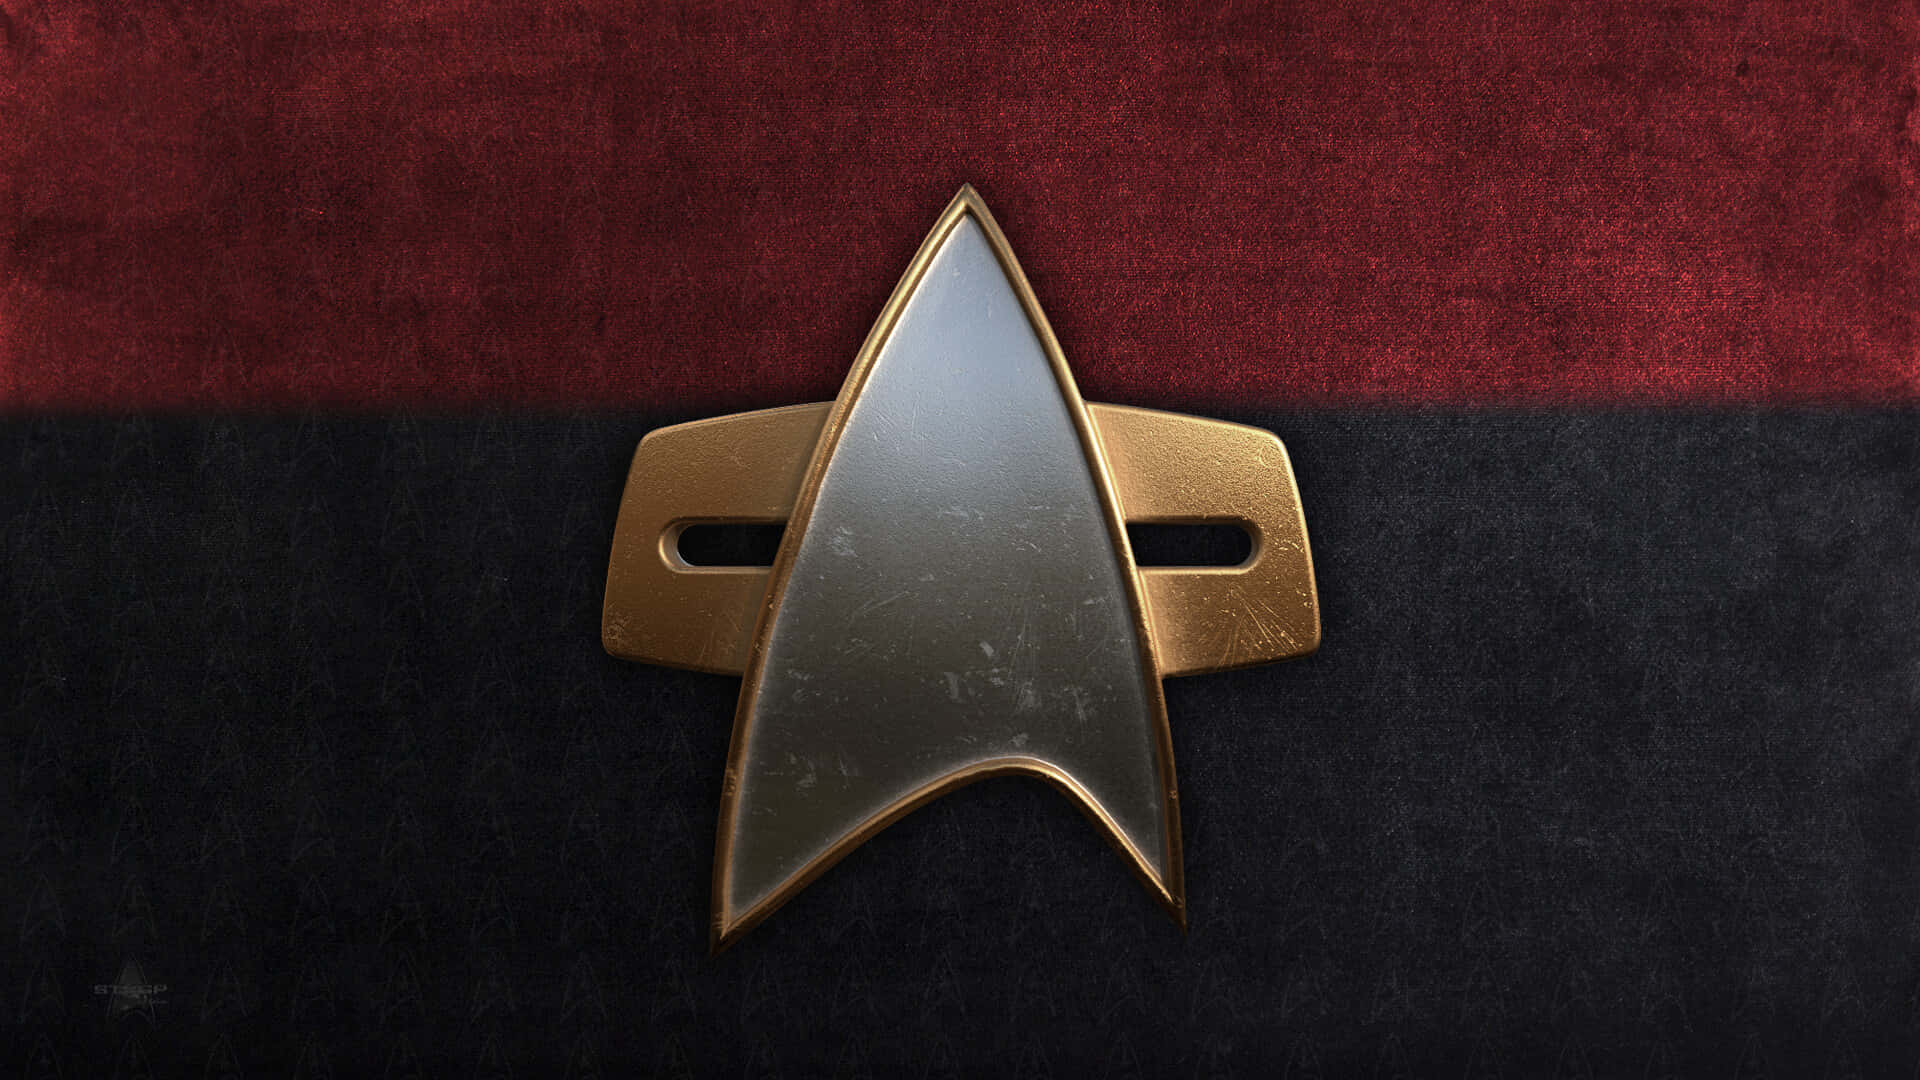 Star Trek Combadgeon Uniform Fabric Wallpaper